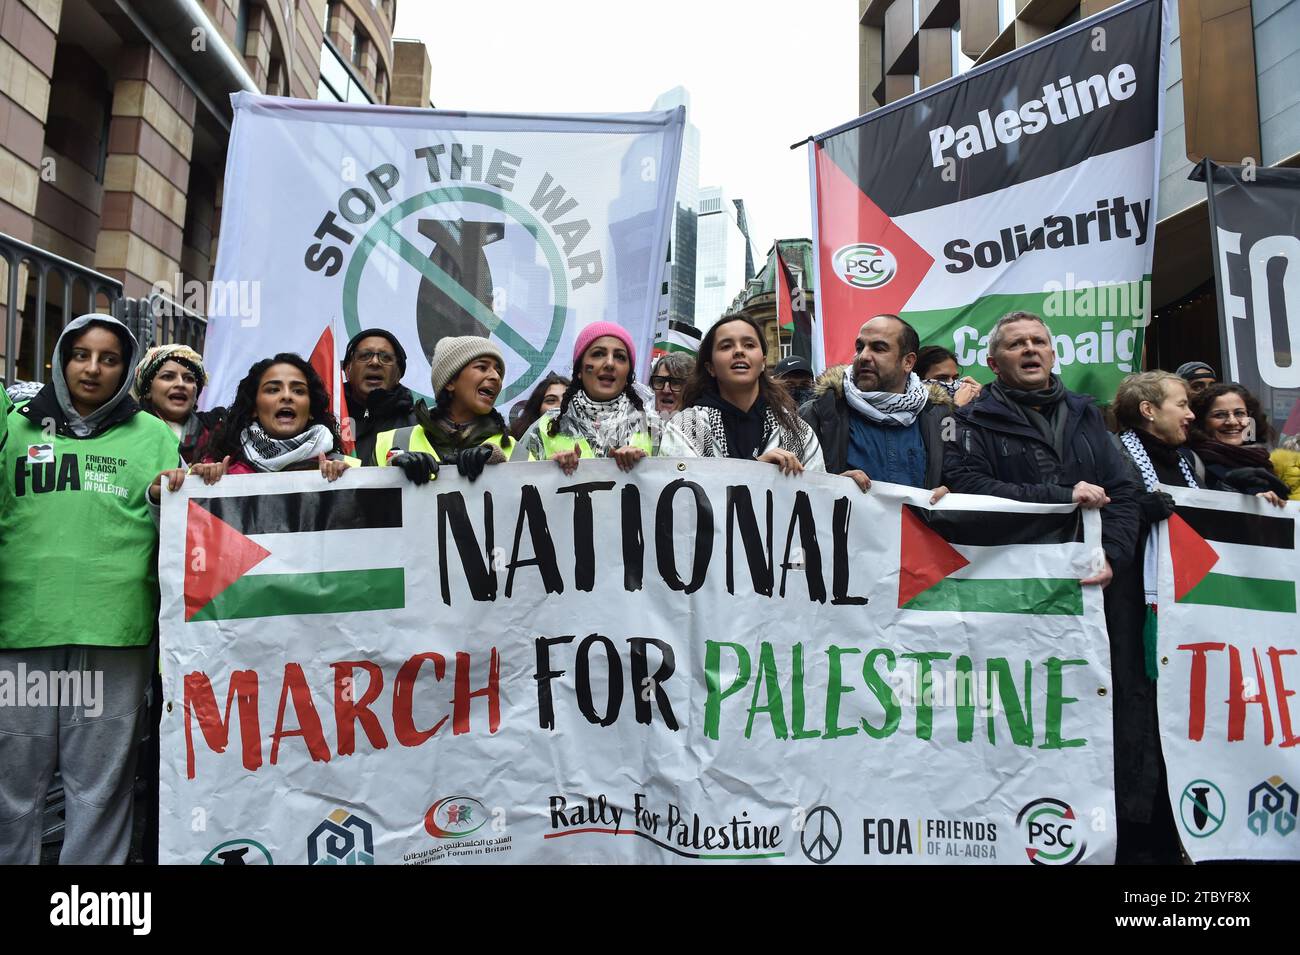 London, England, Großbritannien. Dezember 2023. Demonstranten versammelten sich in der Bank Junction, London, als Teil des National March for Palestine, um für einen vollständigen Waffenstillstand und ein sofortiges Ende des Krieges in Gaza zu plädieren. Die von der Palästinensischen Solidaritätskampagne organisierte Demonstration wird von verschiedenen propalästinensischen Gruppen unterstützt, darunter Freunde von Al-Aqsa, Stop the war Coalition und das Palästinensische Forum in Großbritannien. Die Demonstranten marschieren durch das Zentrum Londons und rufen Frieden und Solidarität mit dem palästinensischen Volk auf. Quelle: ZUMA Press, Inc./Alamy Live News Stockfoto